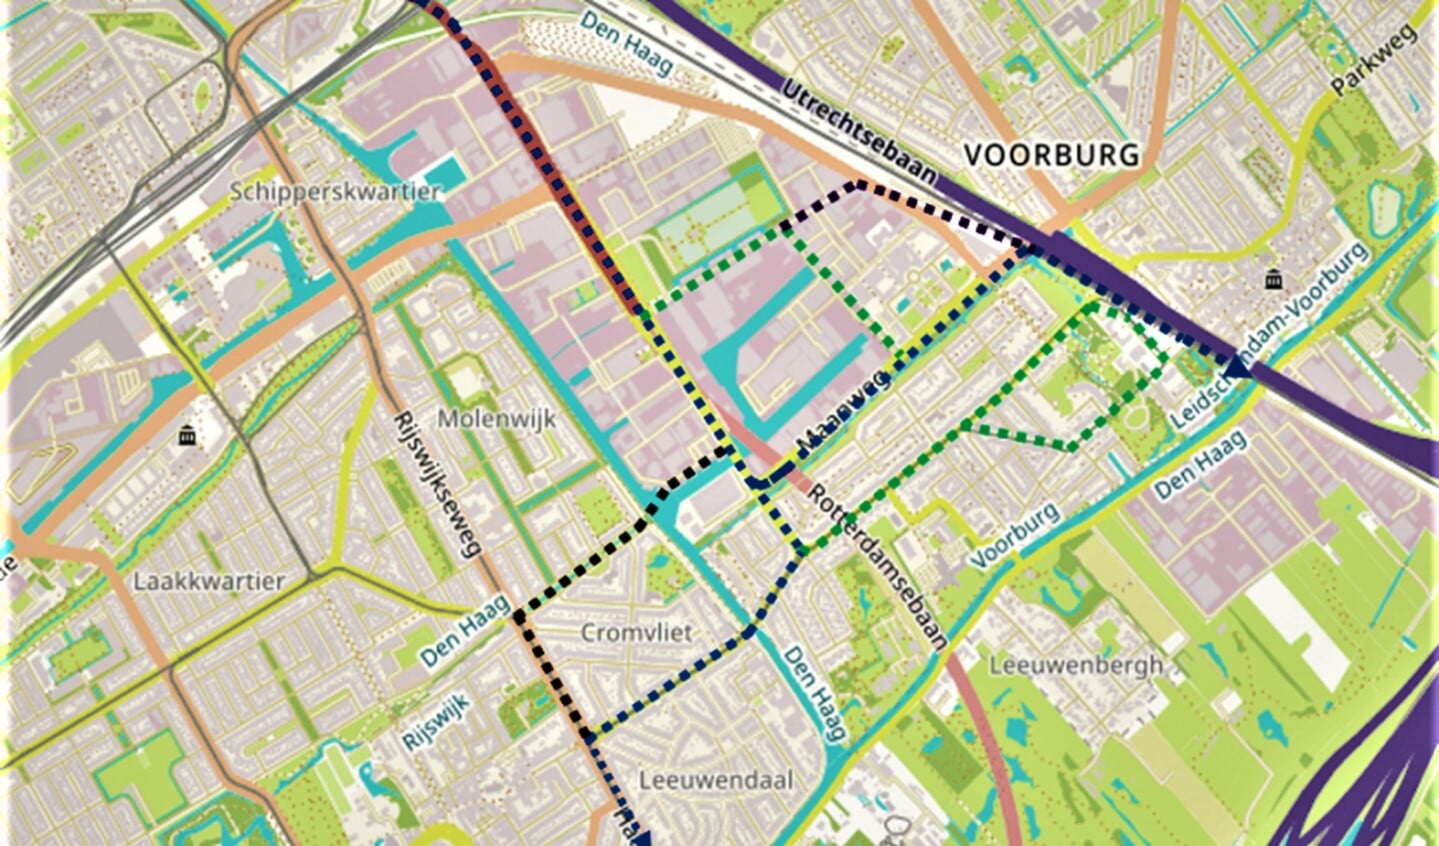 Kaartje met de tracés van het openbaar vervoer van en naar het CID Binckhorst, onder meer ook naar en door Voorburg (illustratie: gemeente LV).